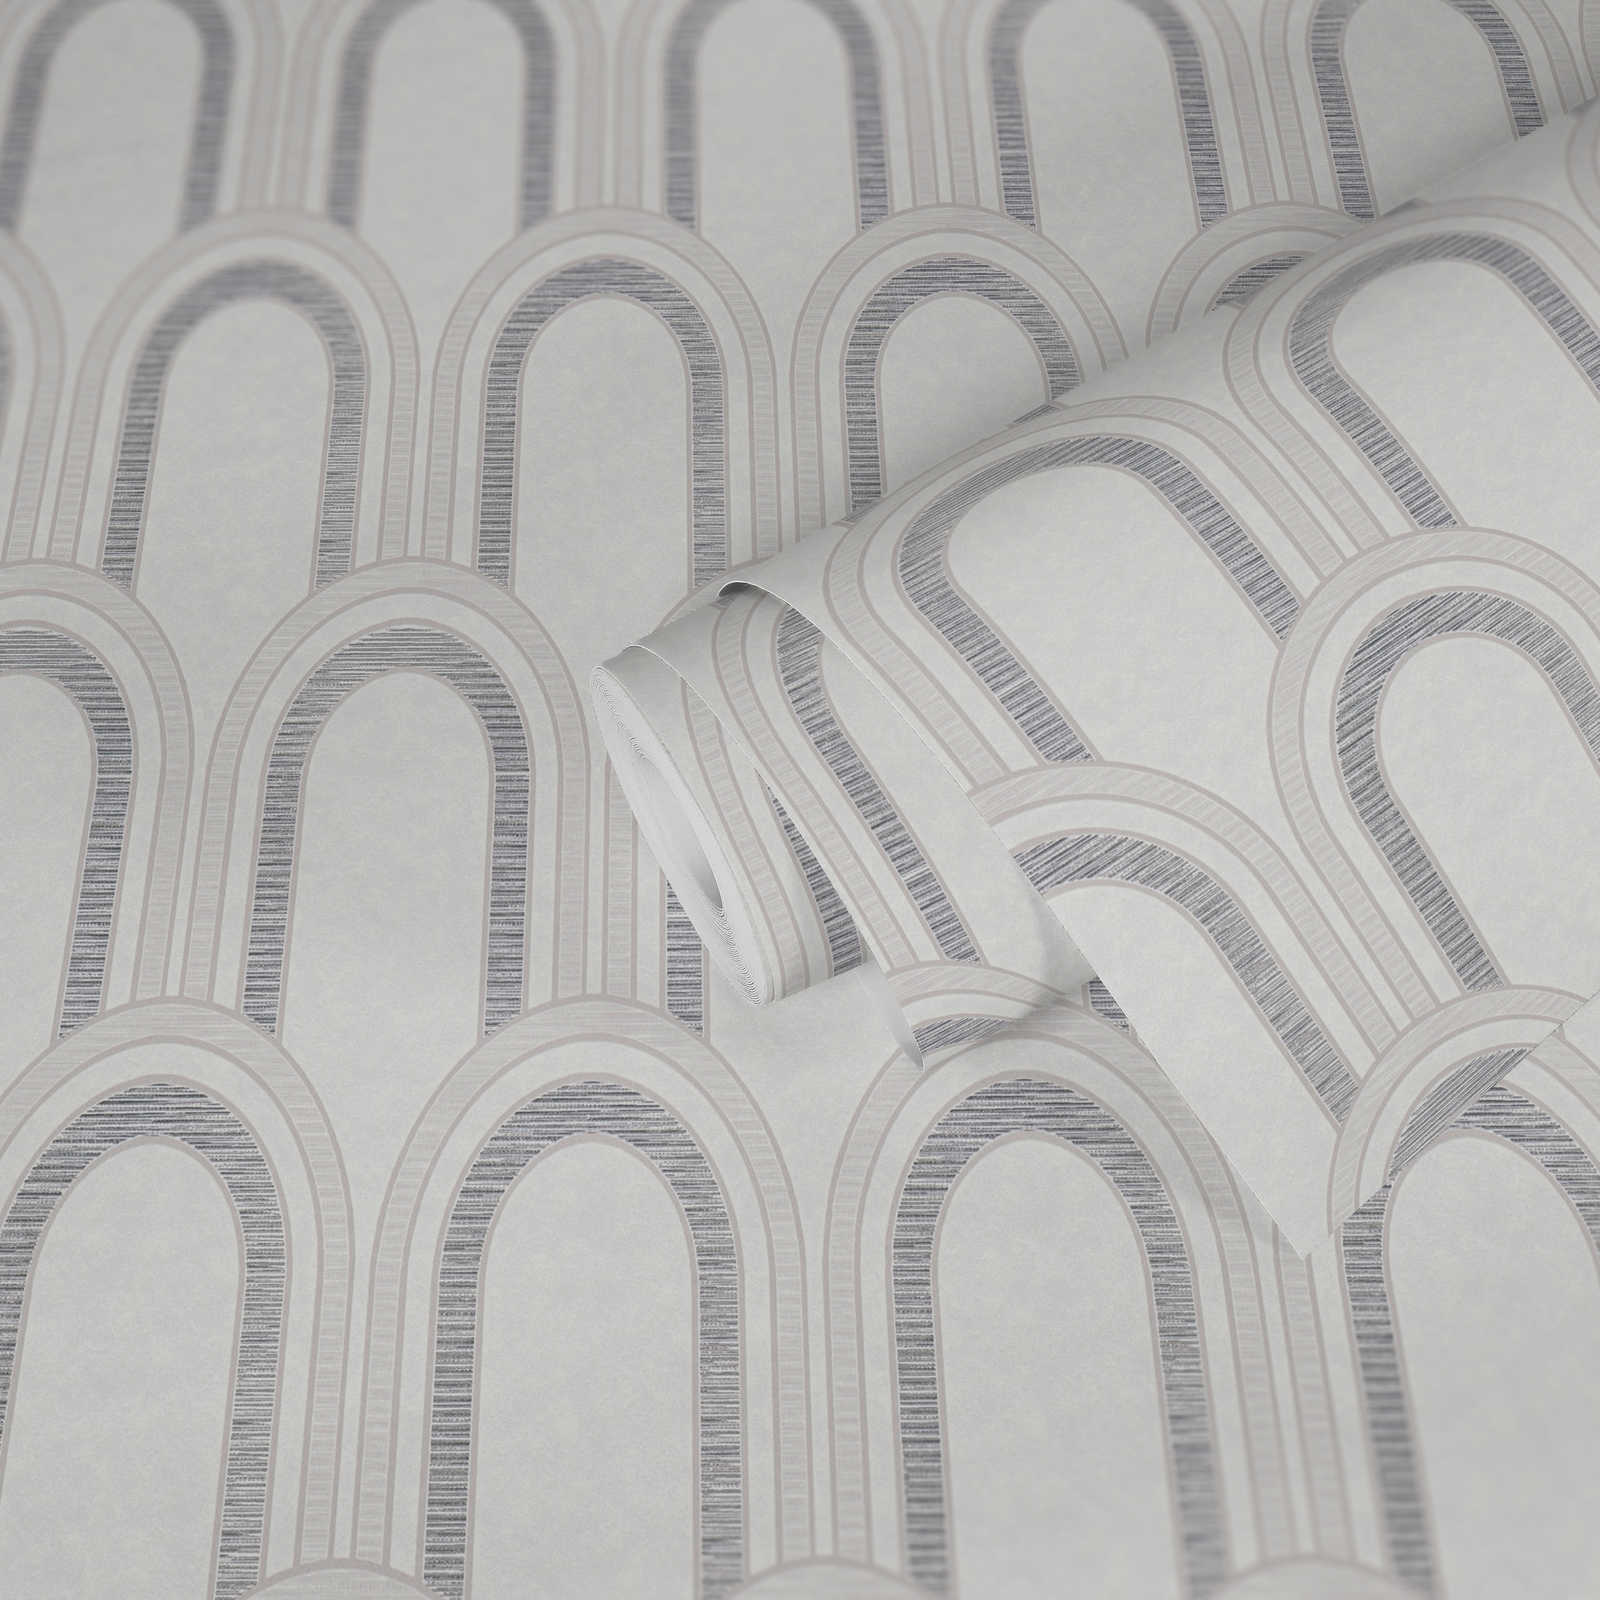             Vliesbehang in striklook met glanseffect - wit, grijs, zilver
        